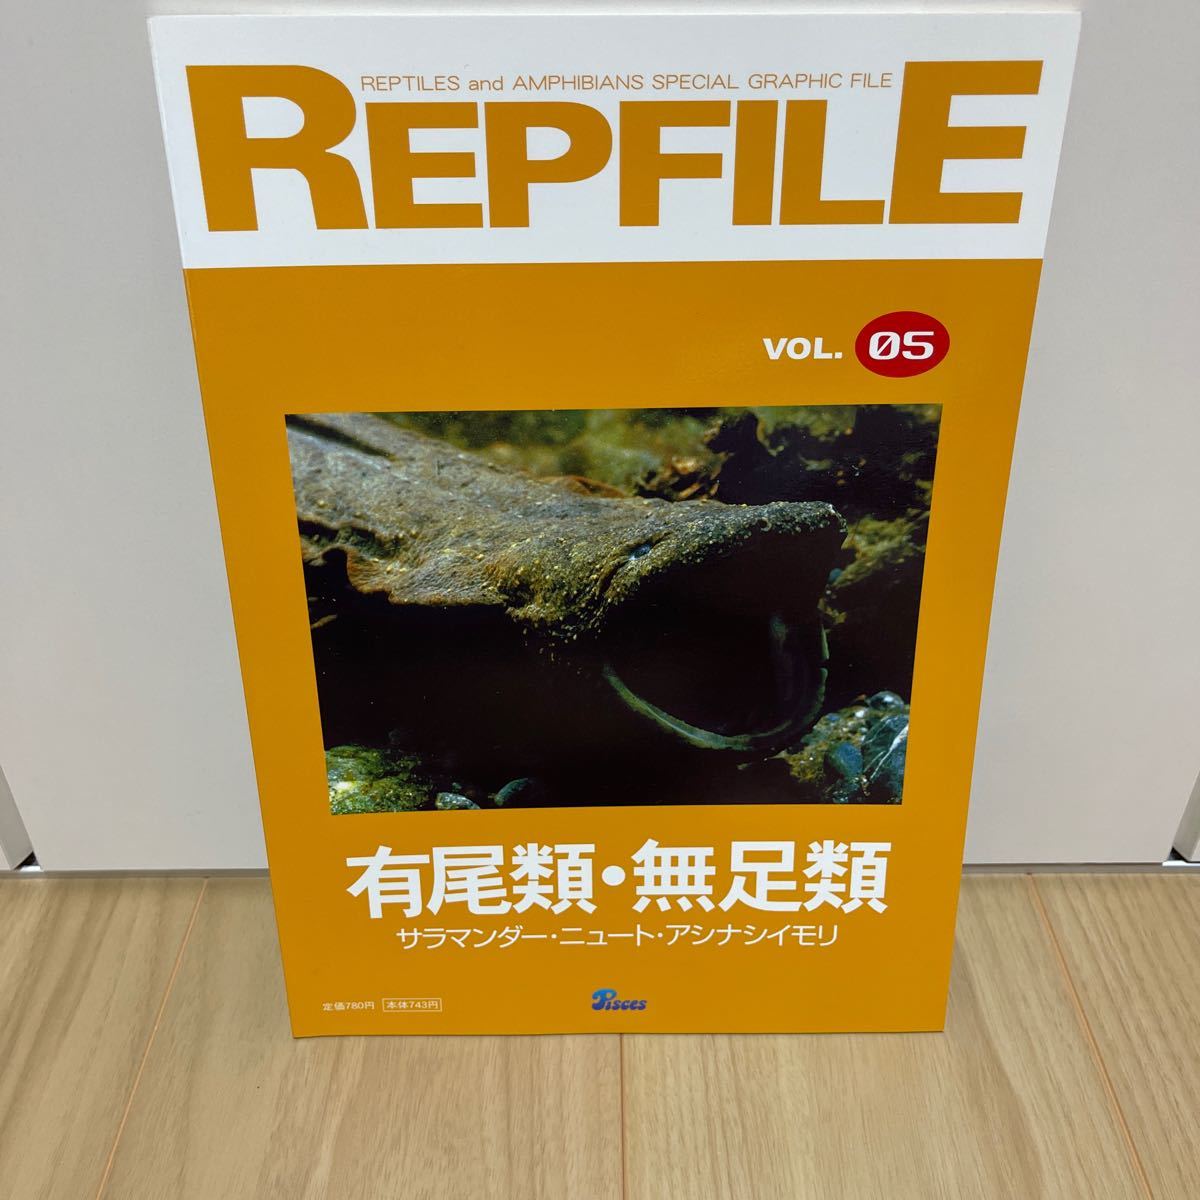  быстрое решение rep файл REPFILE vol.05 иметь хвост вид нет пара вид саламандра новый toasi нет тритон другой 